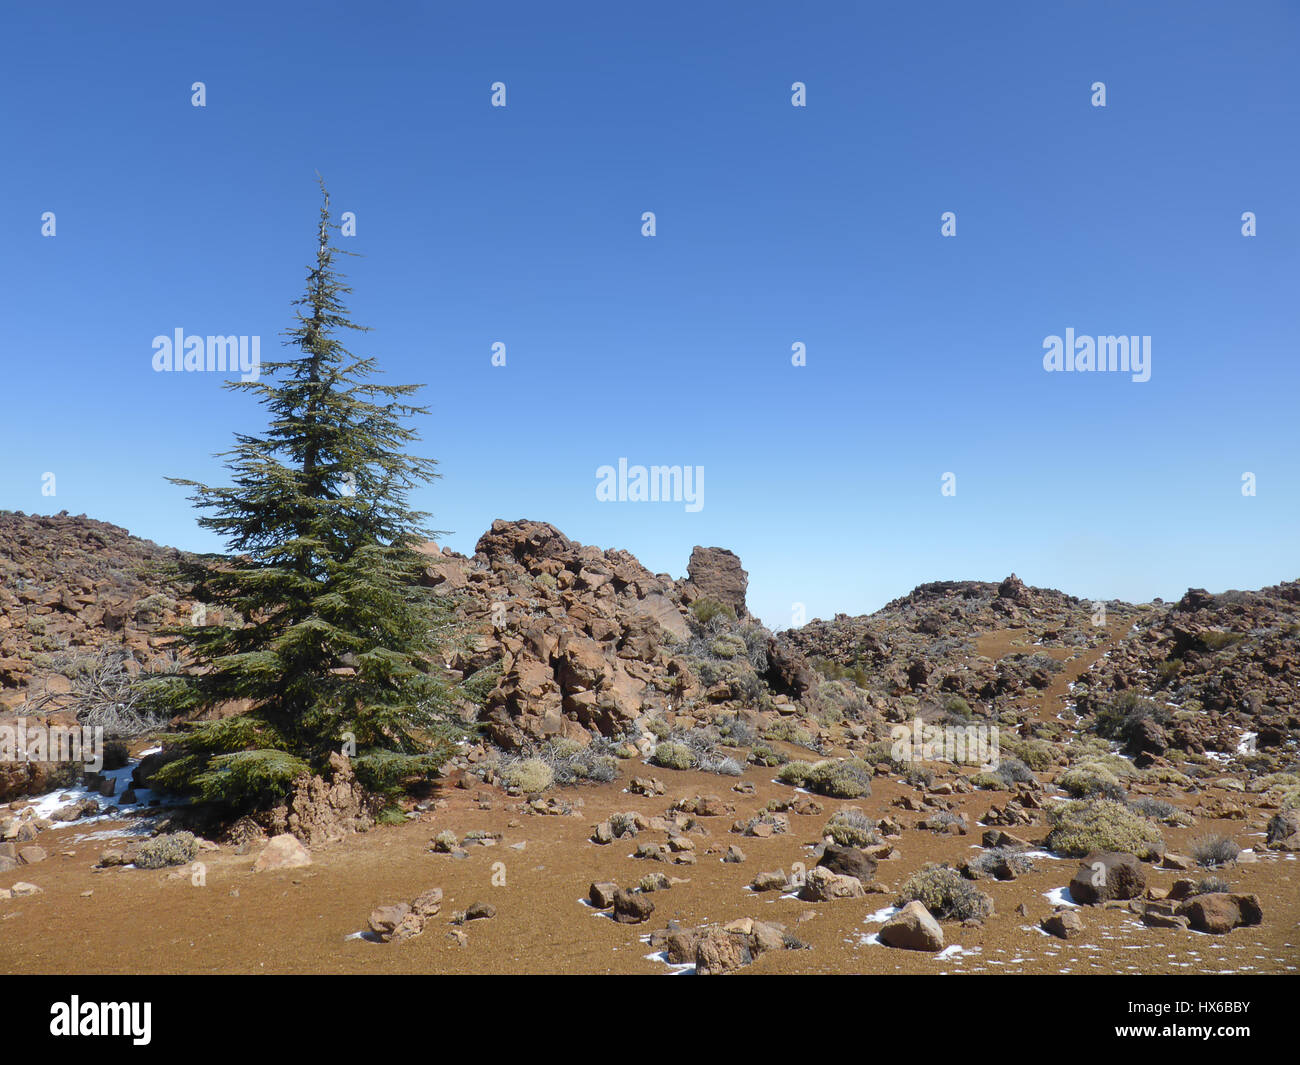 Arbre de Noël dans le paysage du désert - paysage de montagne Banque D'Images